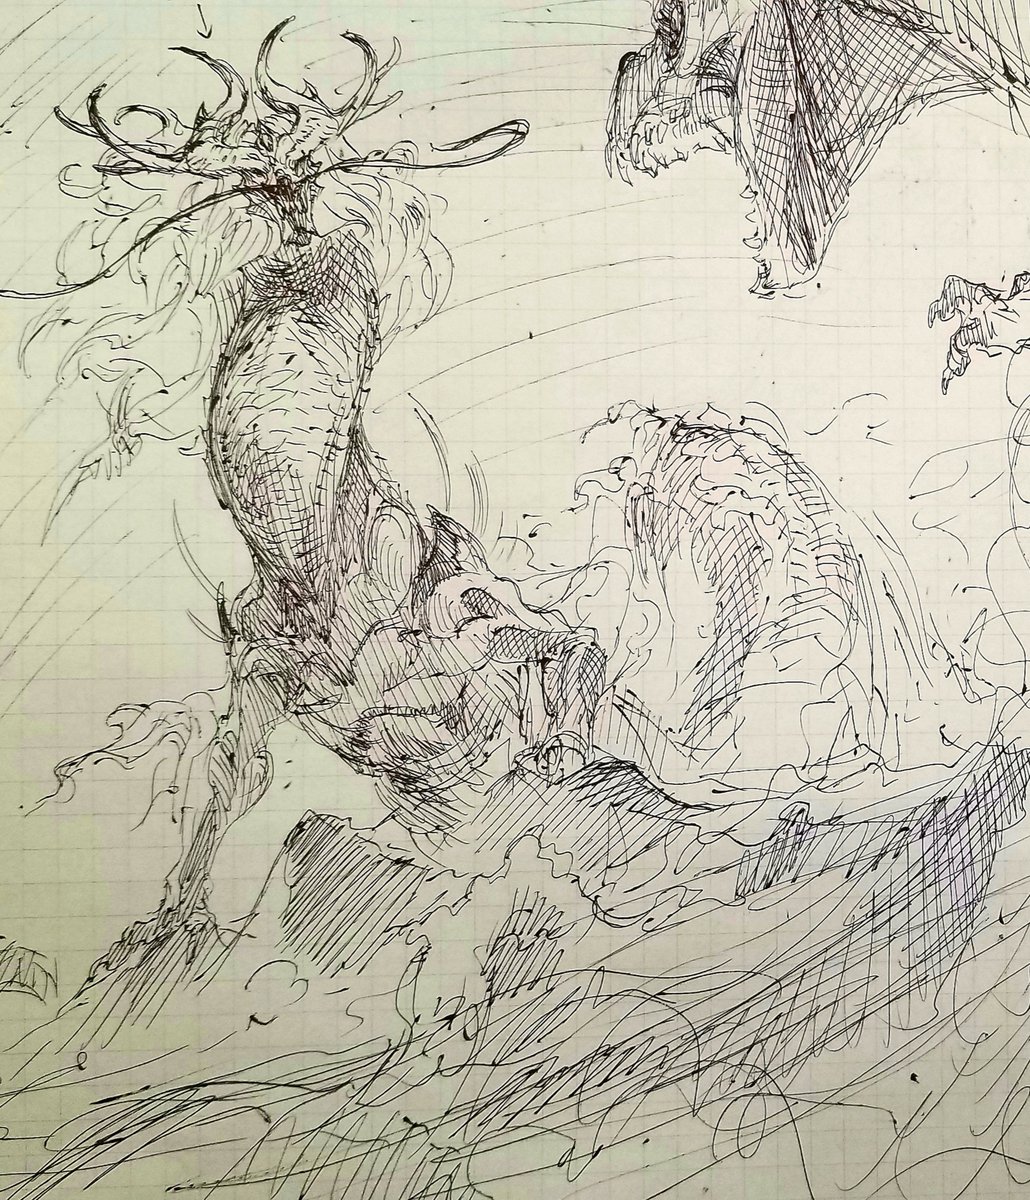 #やじるのらくがき
#落書き
#monsterdesign
#creaturedesign
#dragon
ボールペンでガリガリ。 